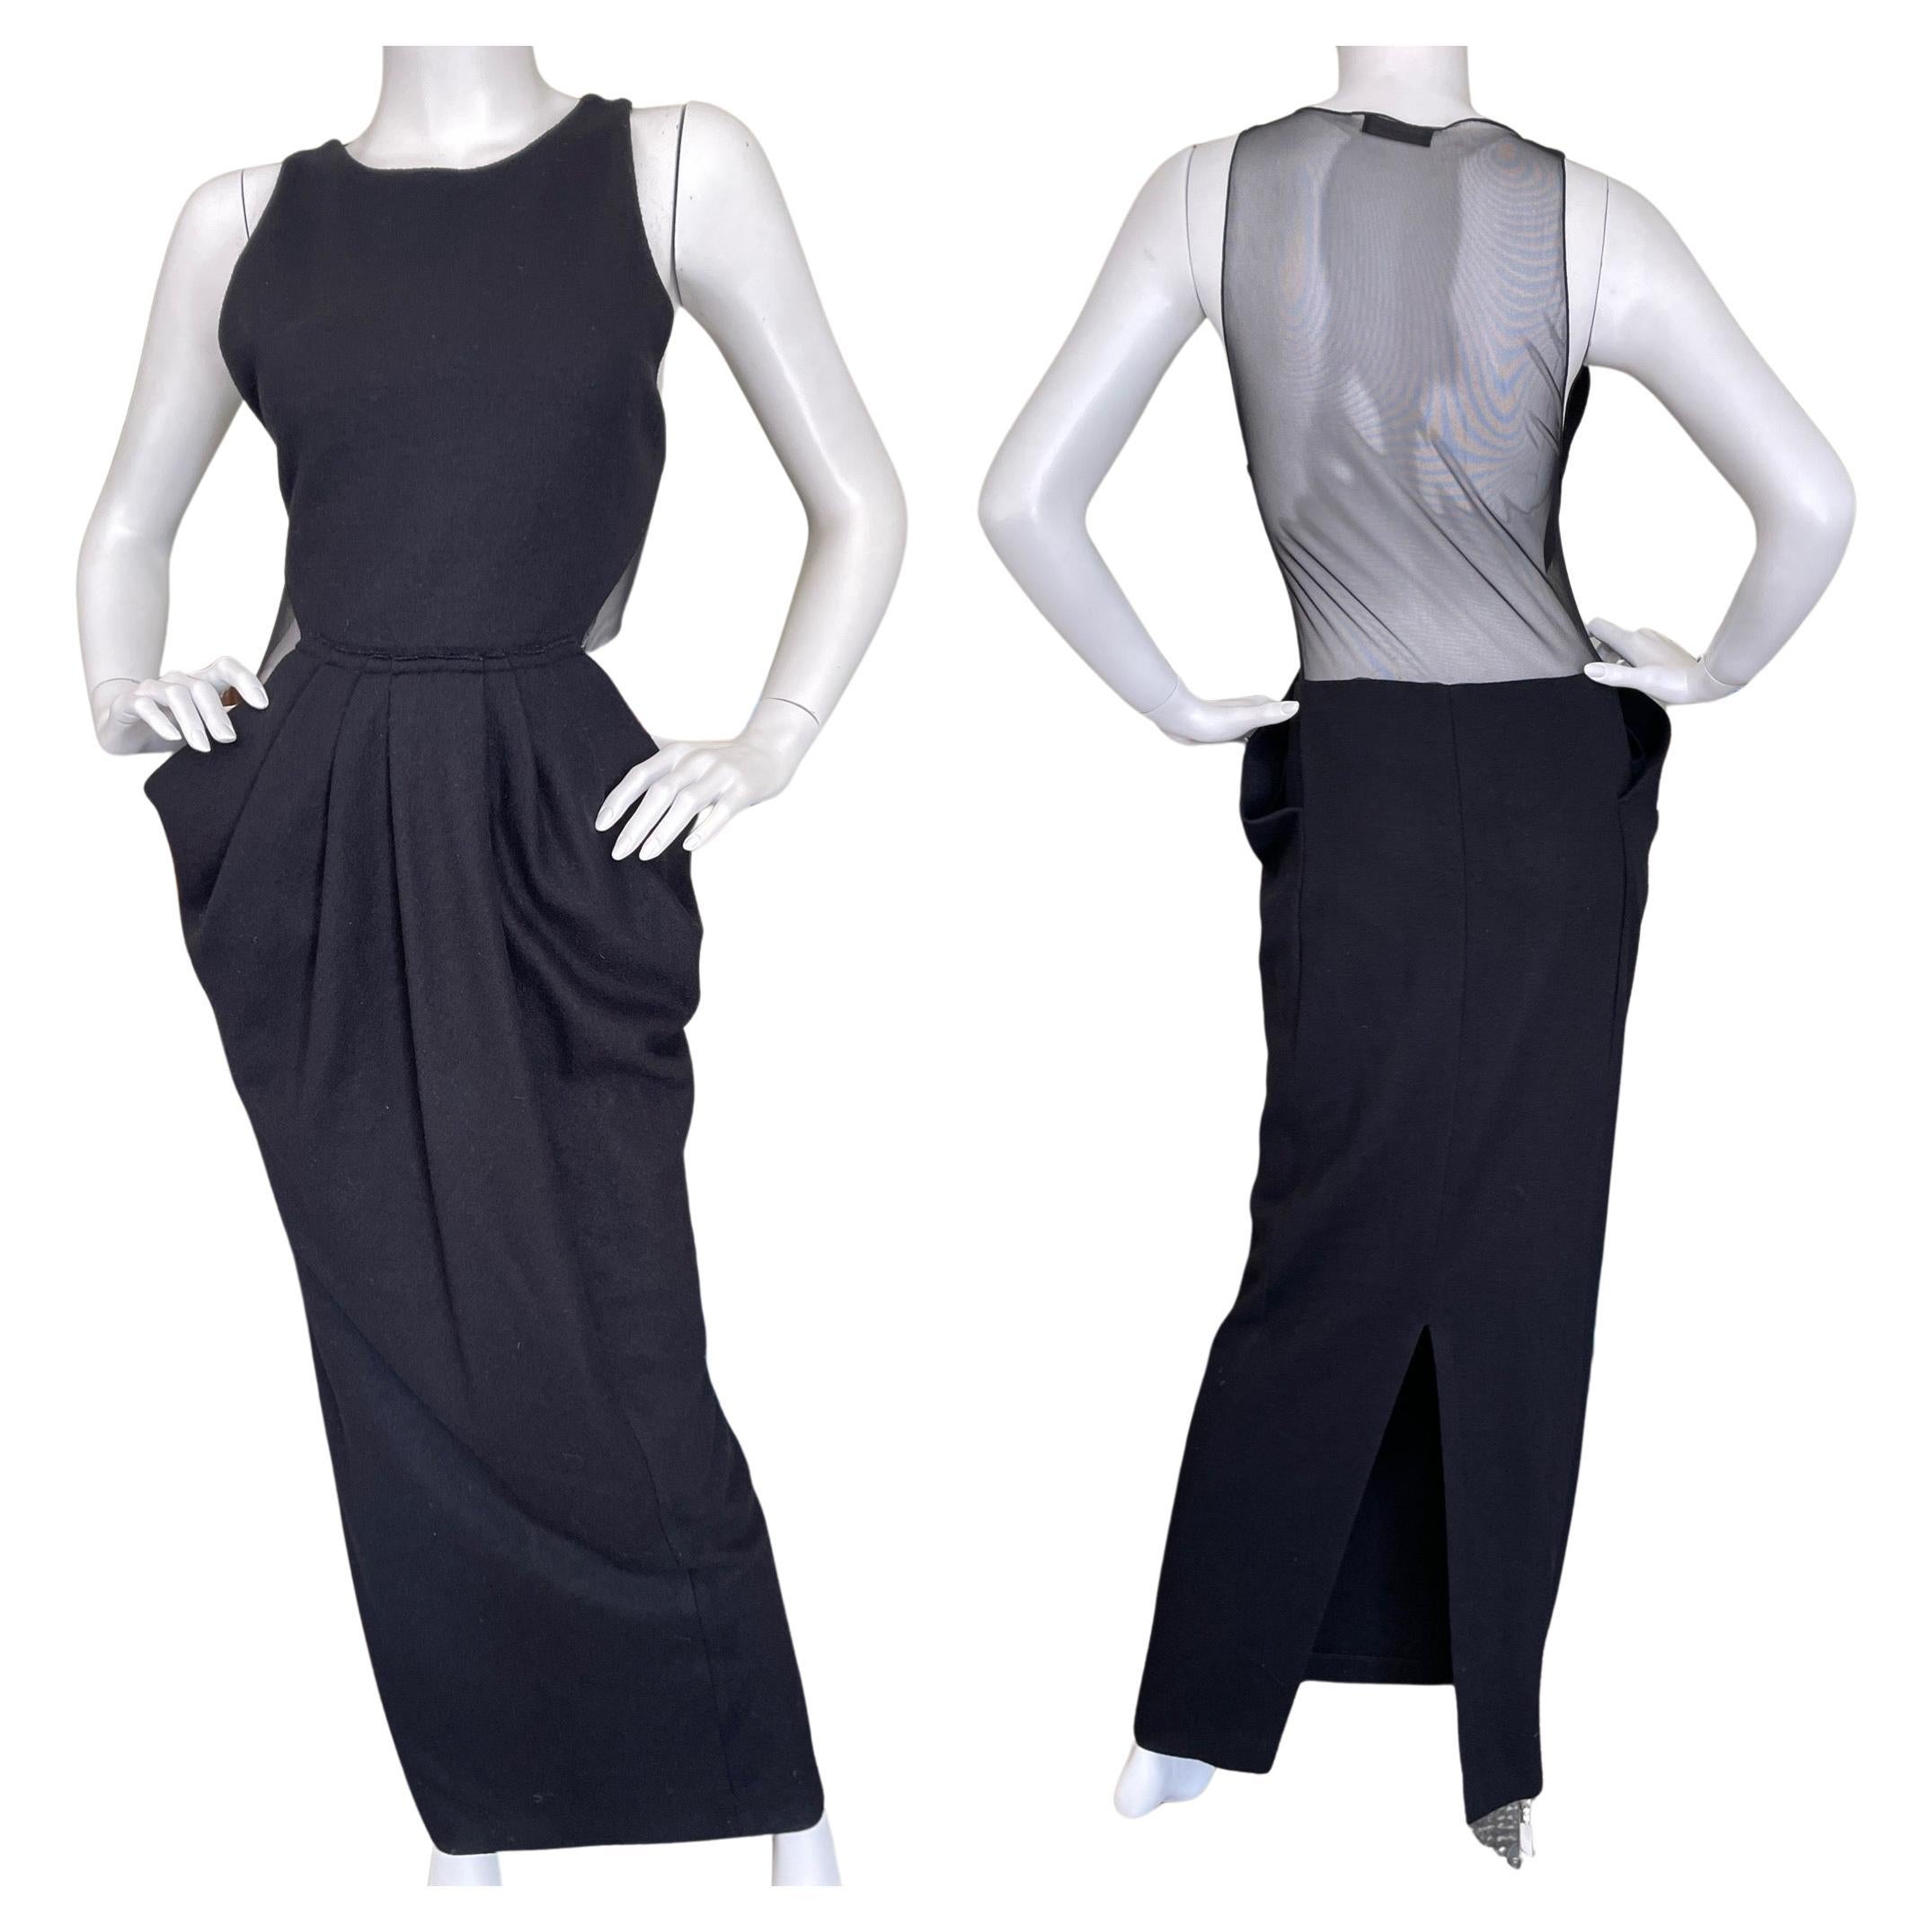 Donna Karan Vintage Black Evening Dress with Sheer Back For Sale